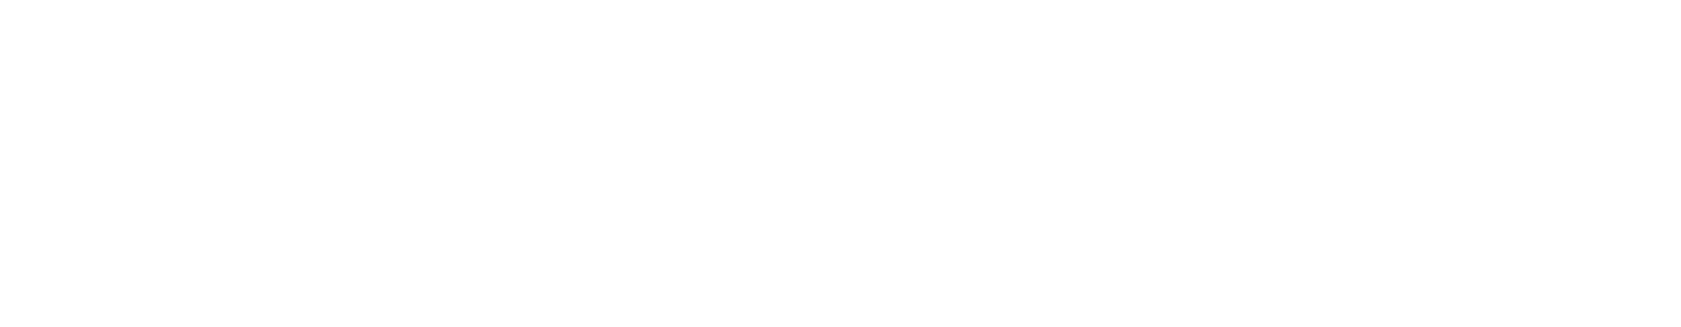 Wemade logo large for dark backgrounds (transparent PNG)